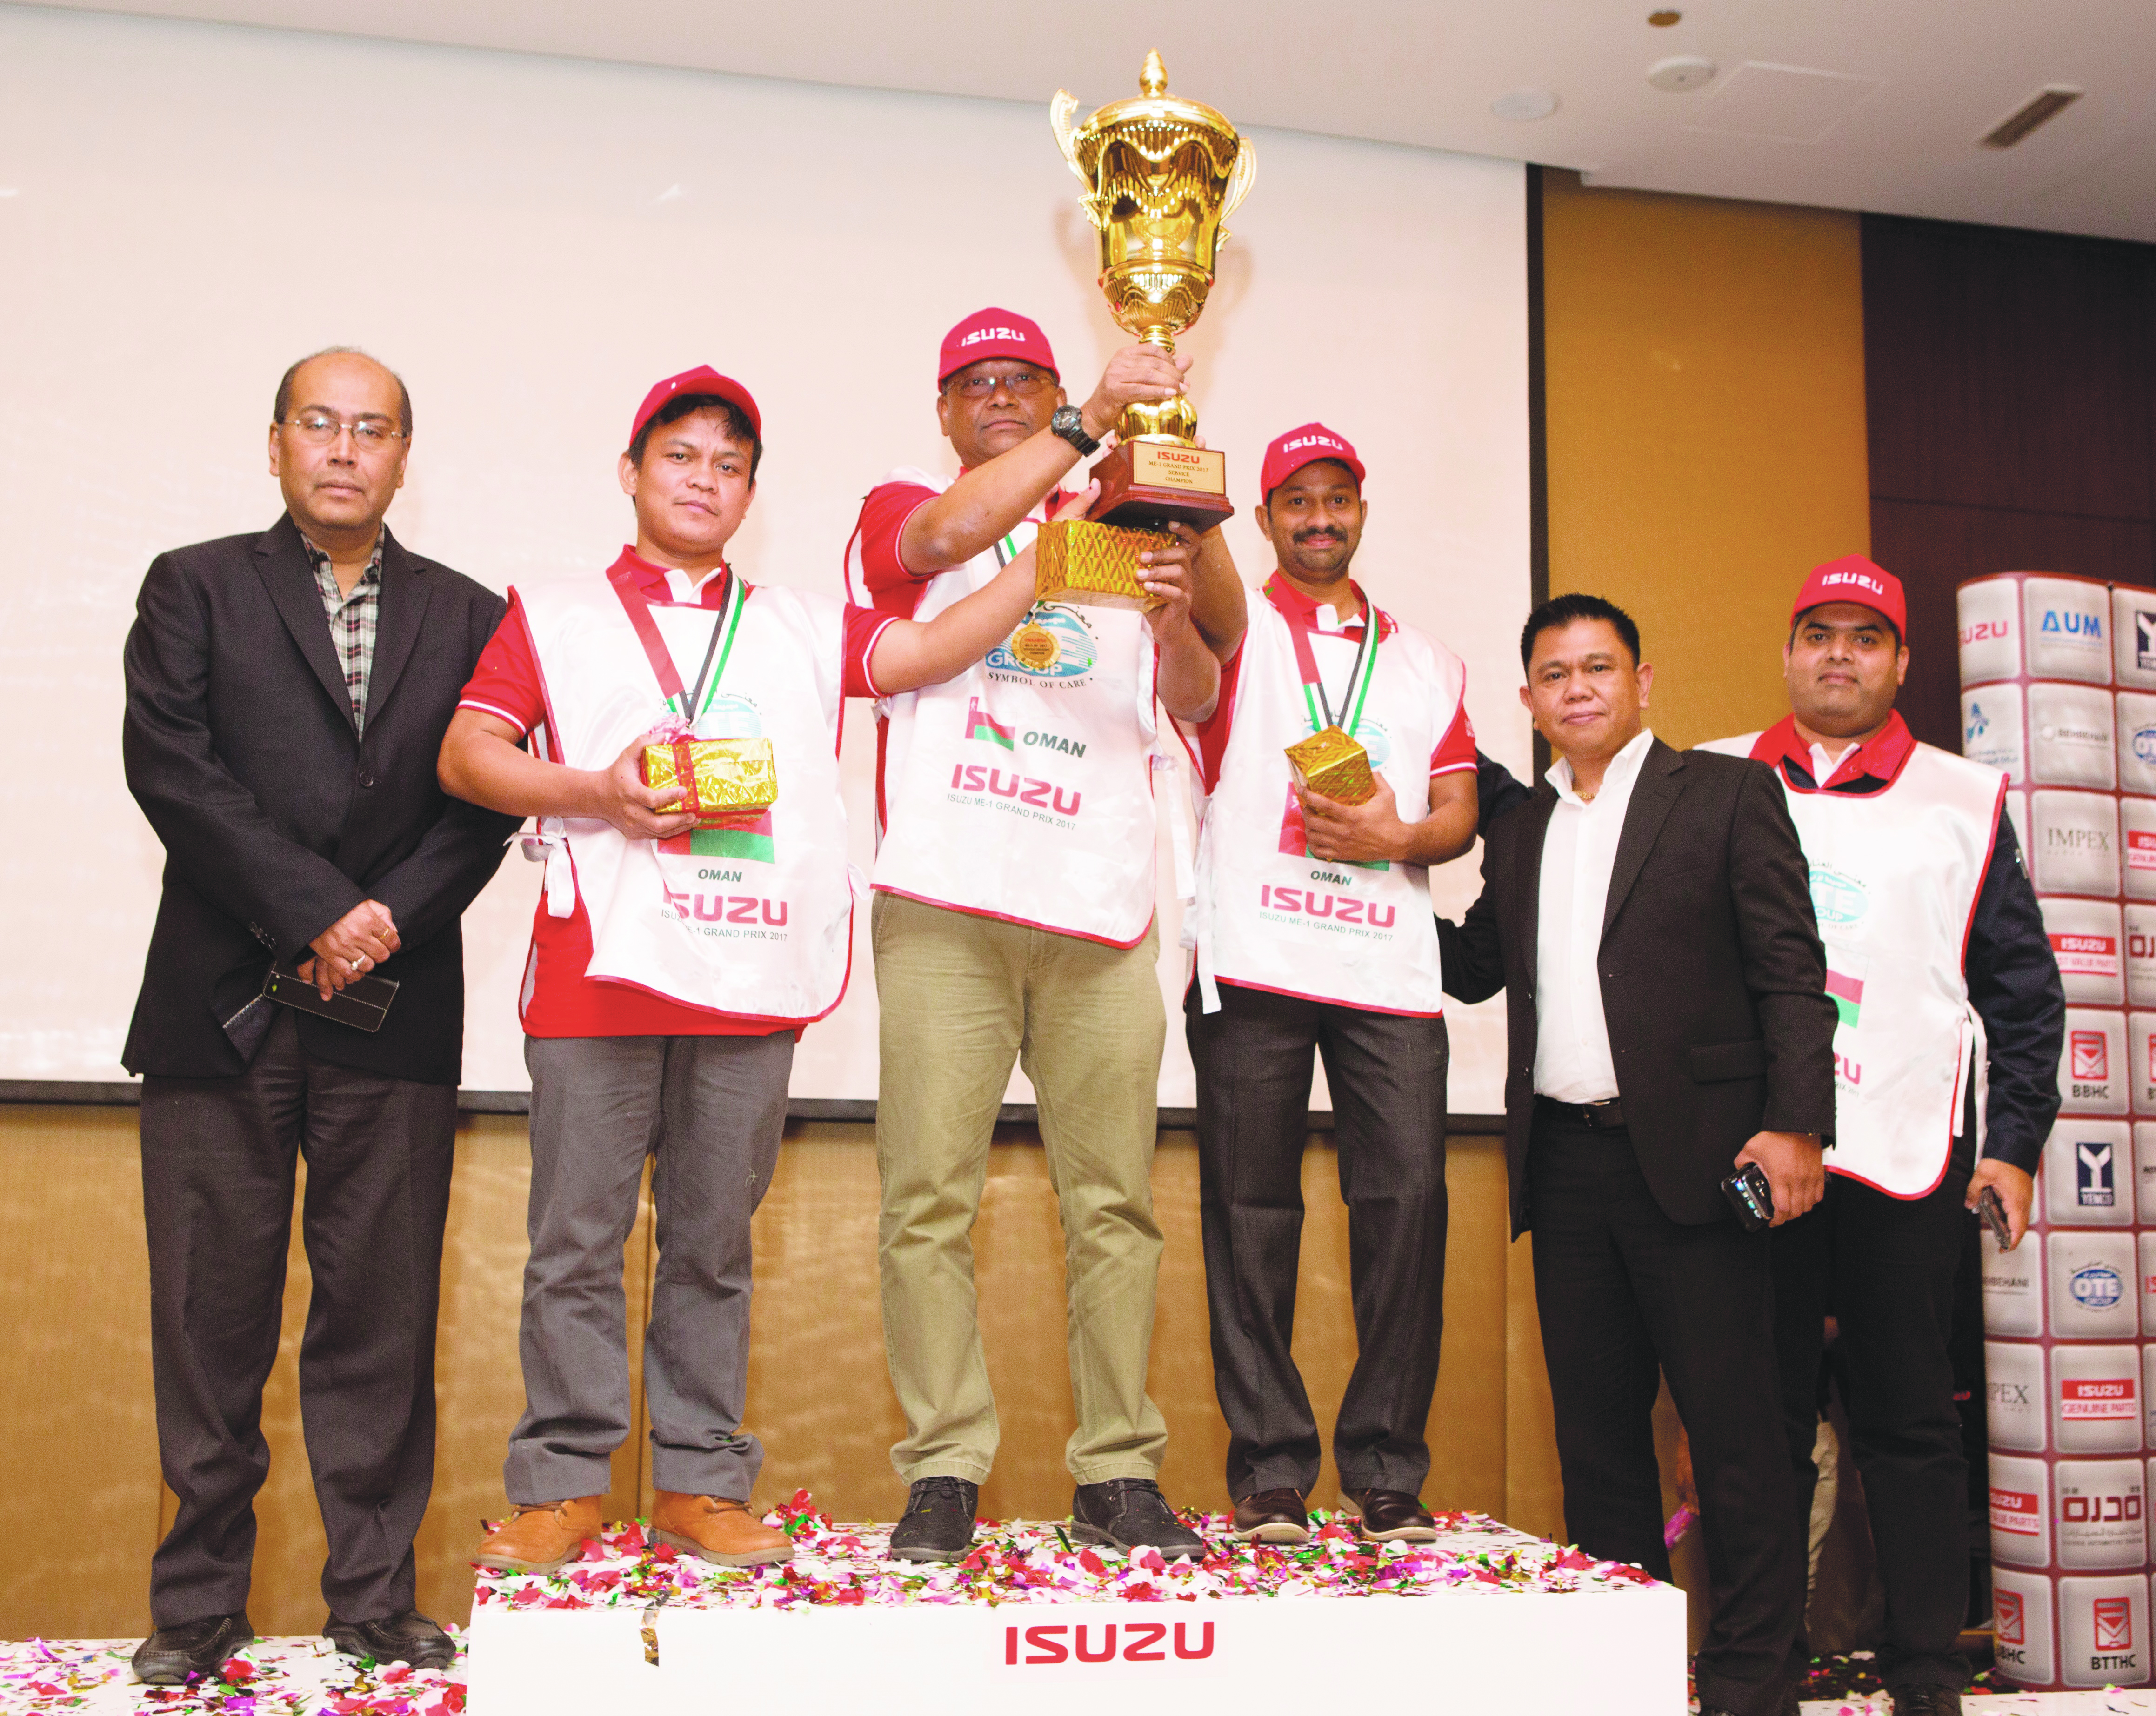 فريق خدمة المؤسسة التجارية العمانية «ايسوزو» يحصد جوائز